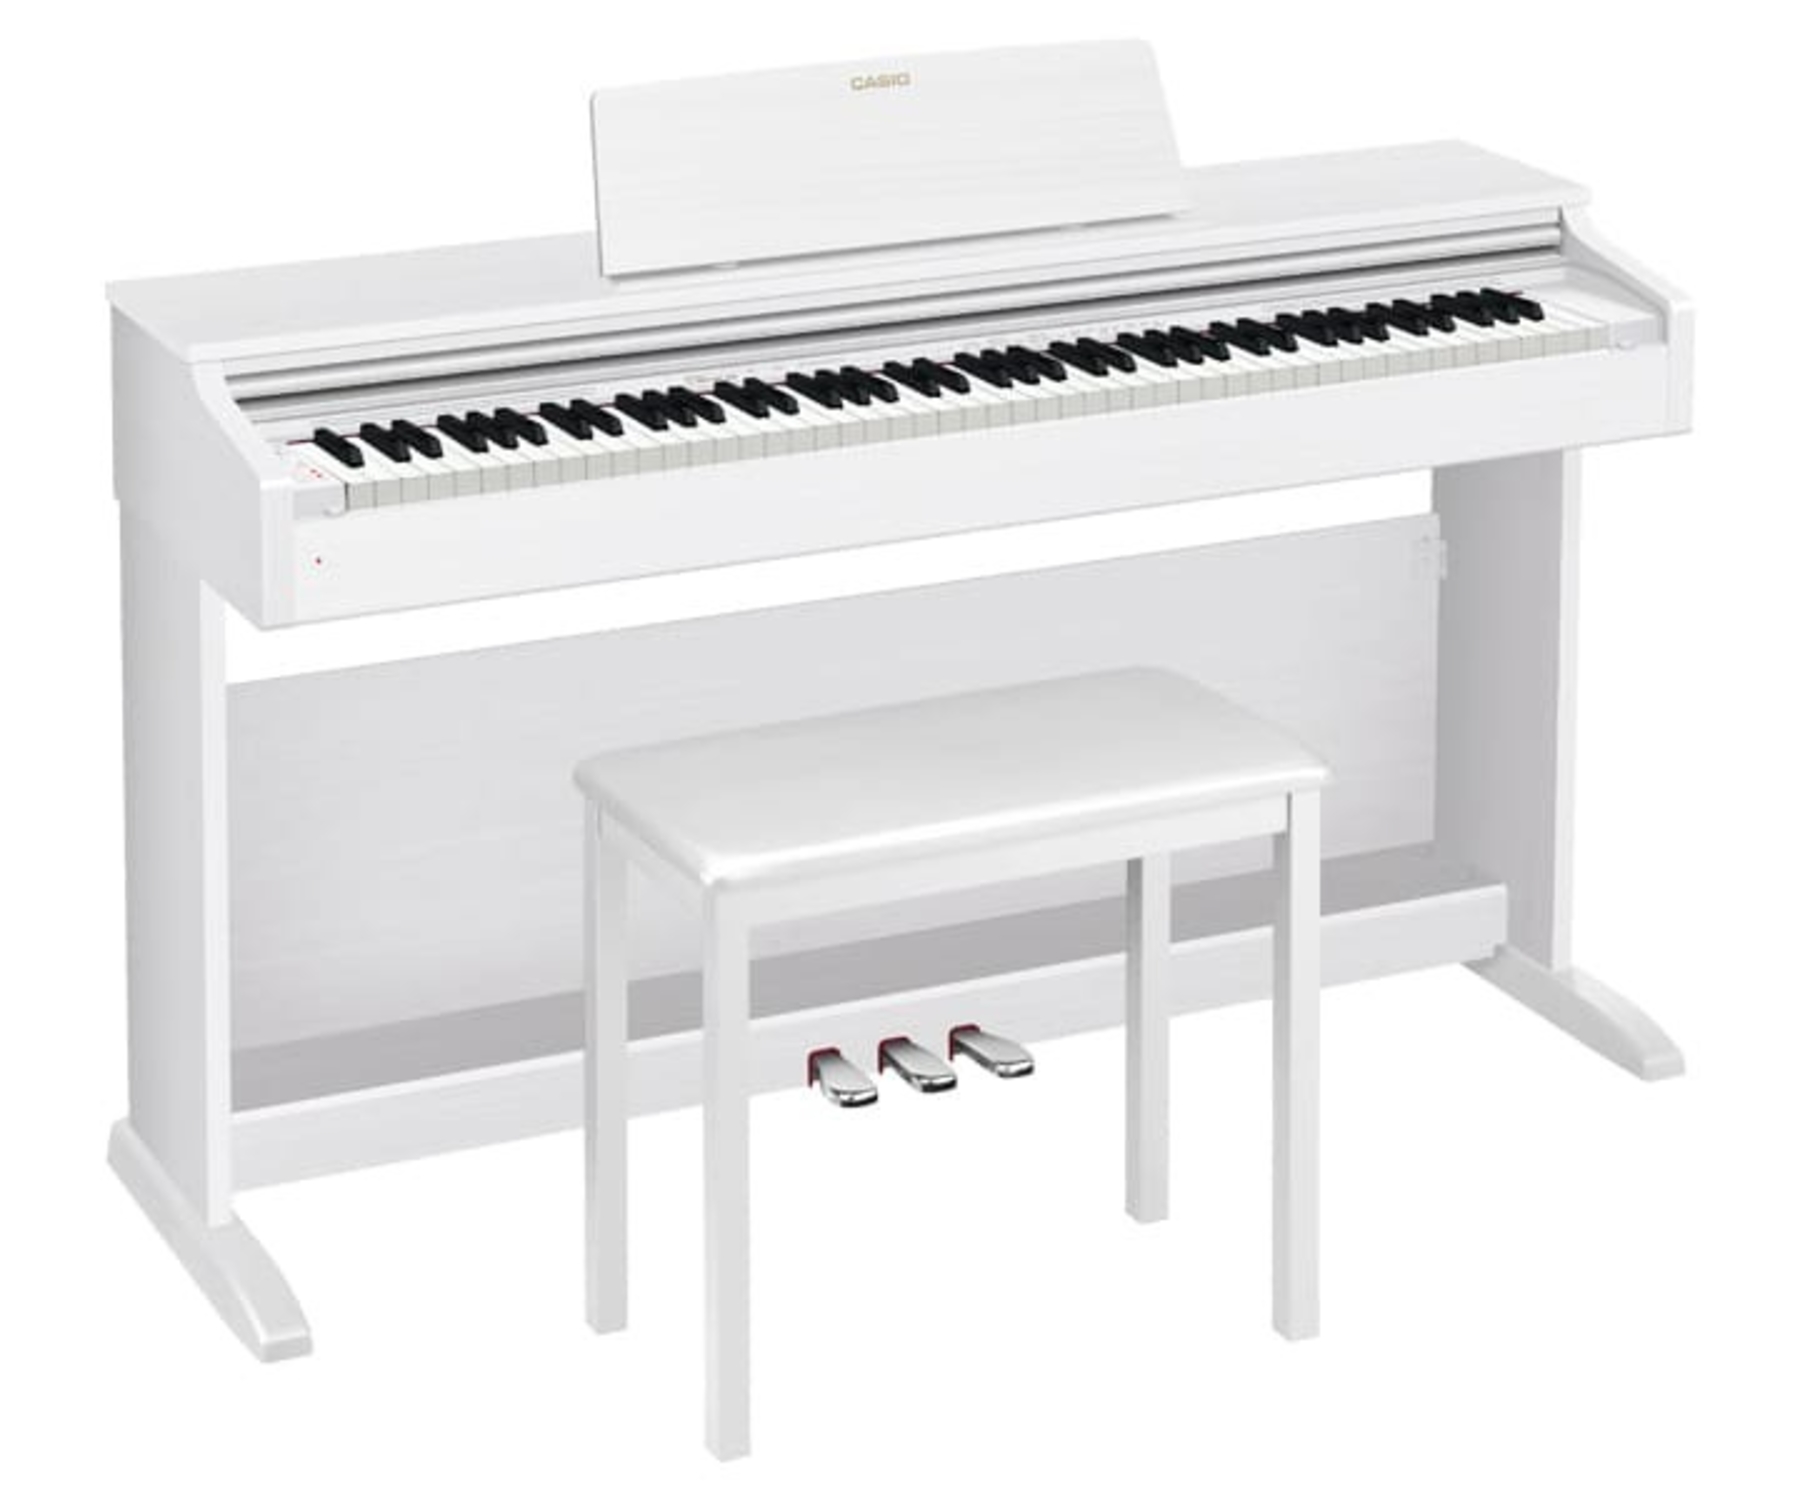 Цифровые пианино Casio Celviano AP-270WE (банкетка в комплекте) цифровые пианино casio celviano ap 270bk банкетка в комплекте